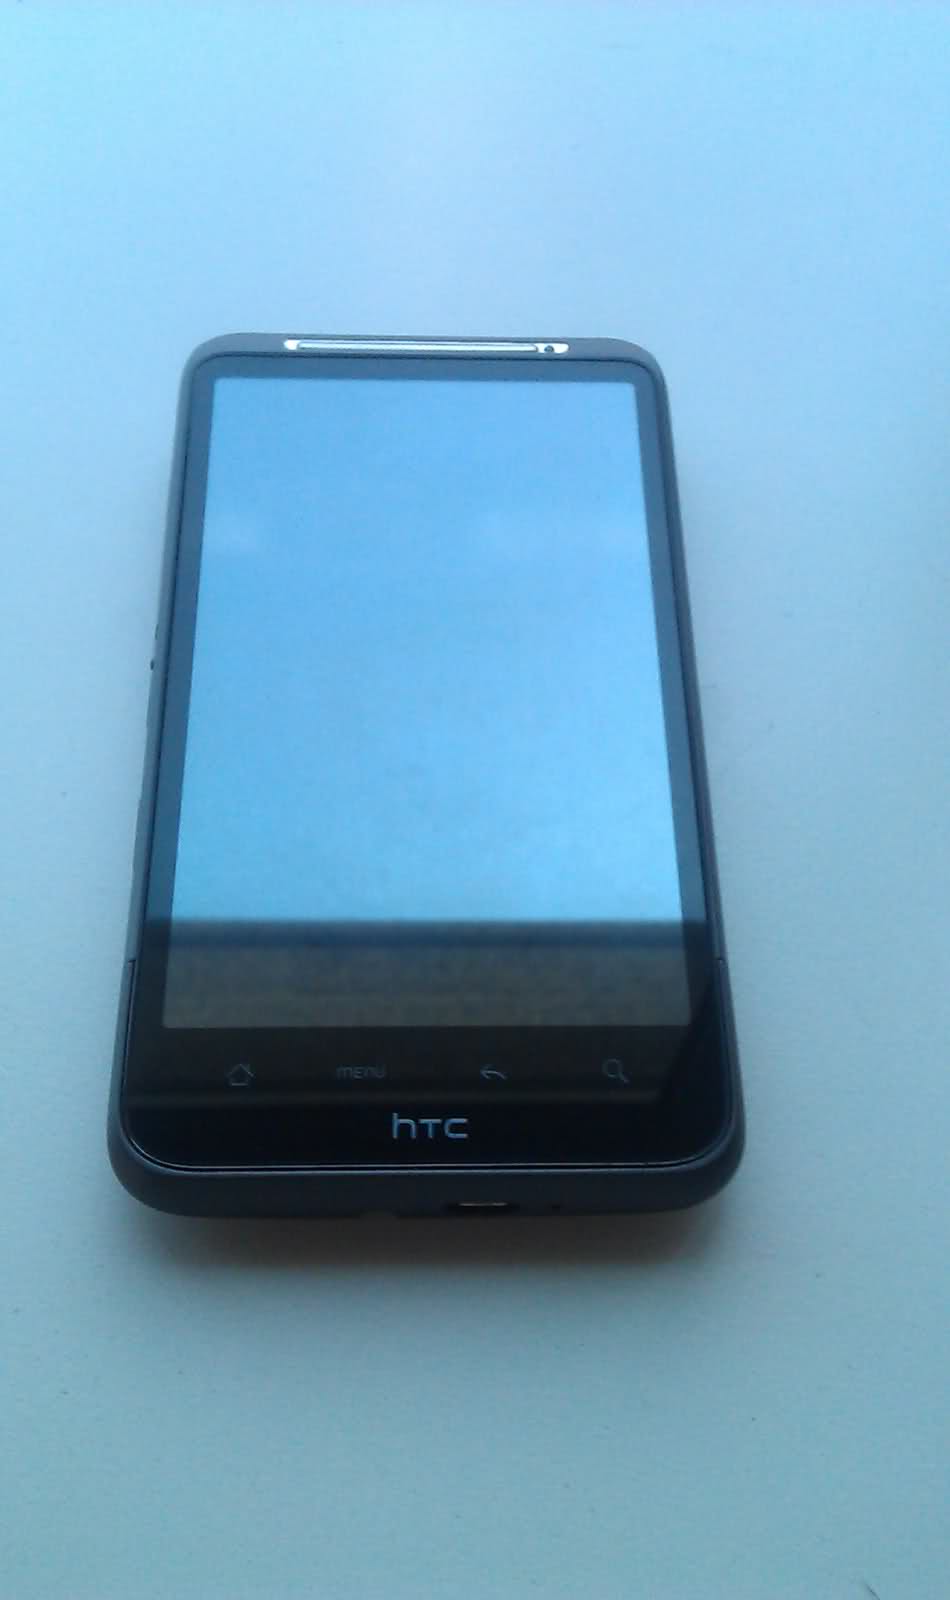  Satılık HTC Desire HD Kayıtlı Kutulu Çiziksiz 850 TL